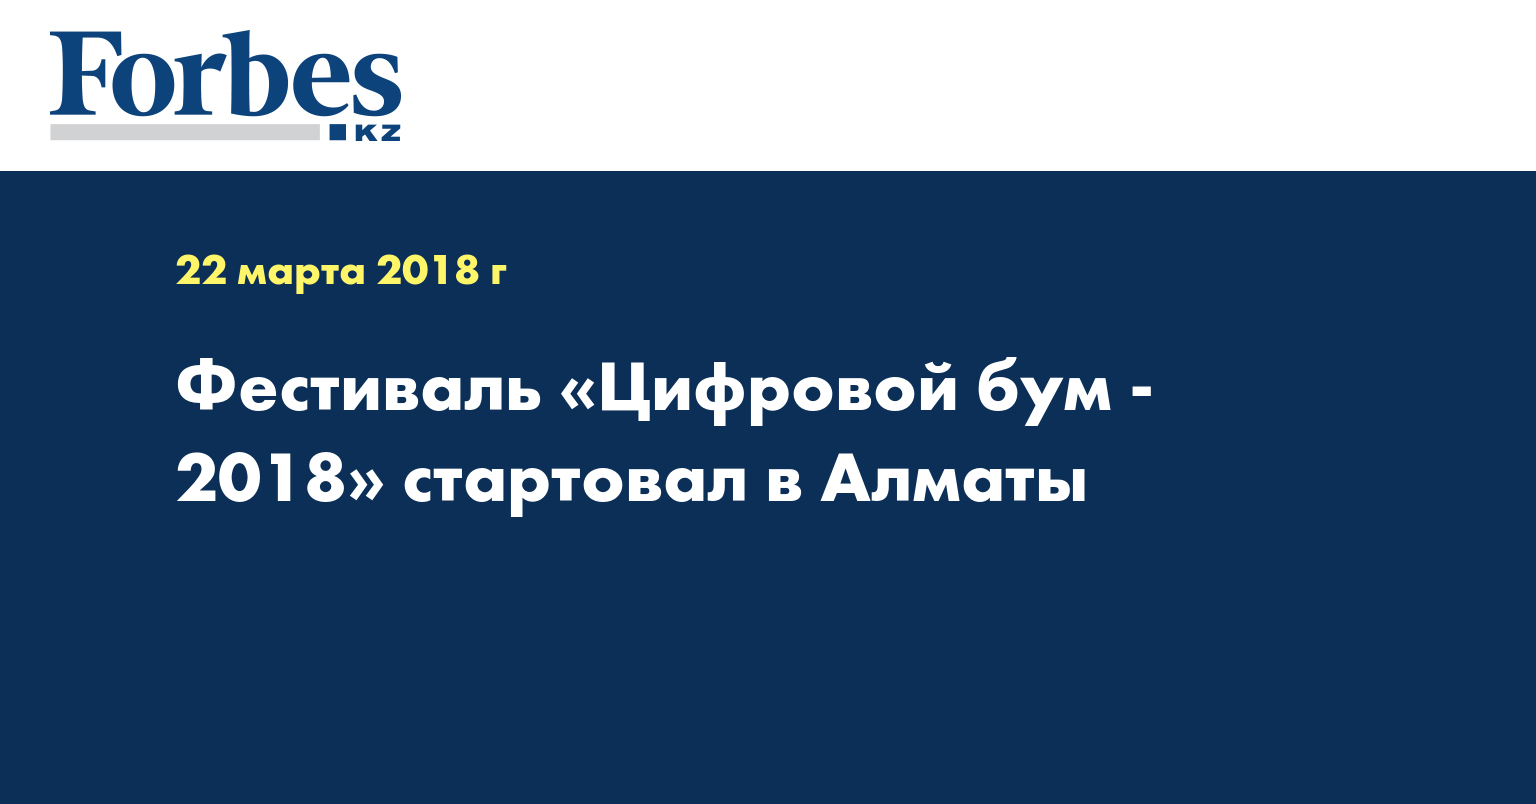 Фестиваль «Цифровой бум - 2018» стартовал в Алматы 